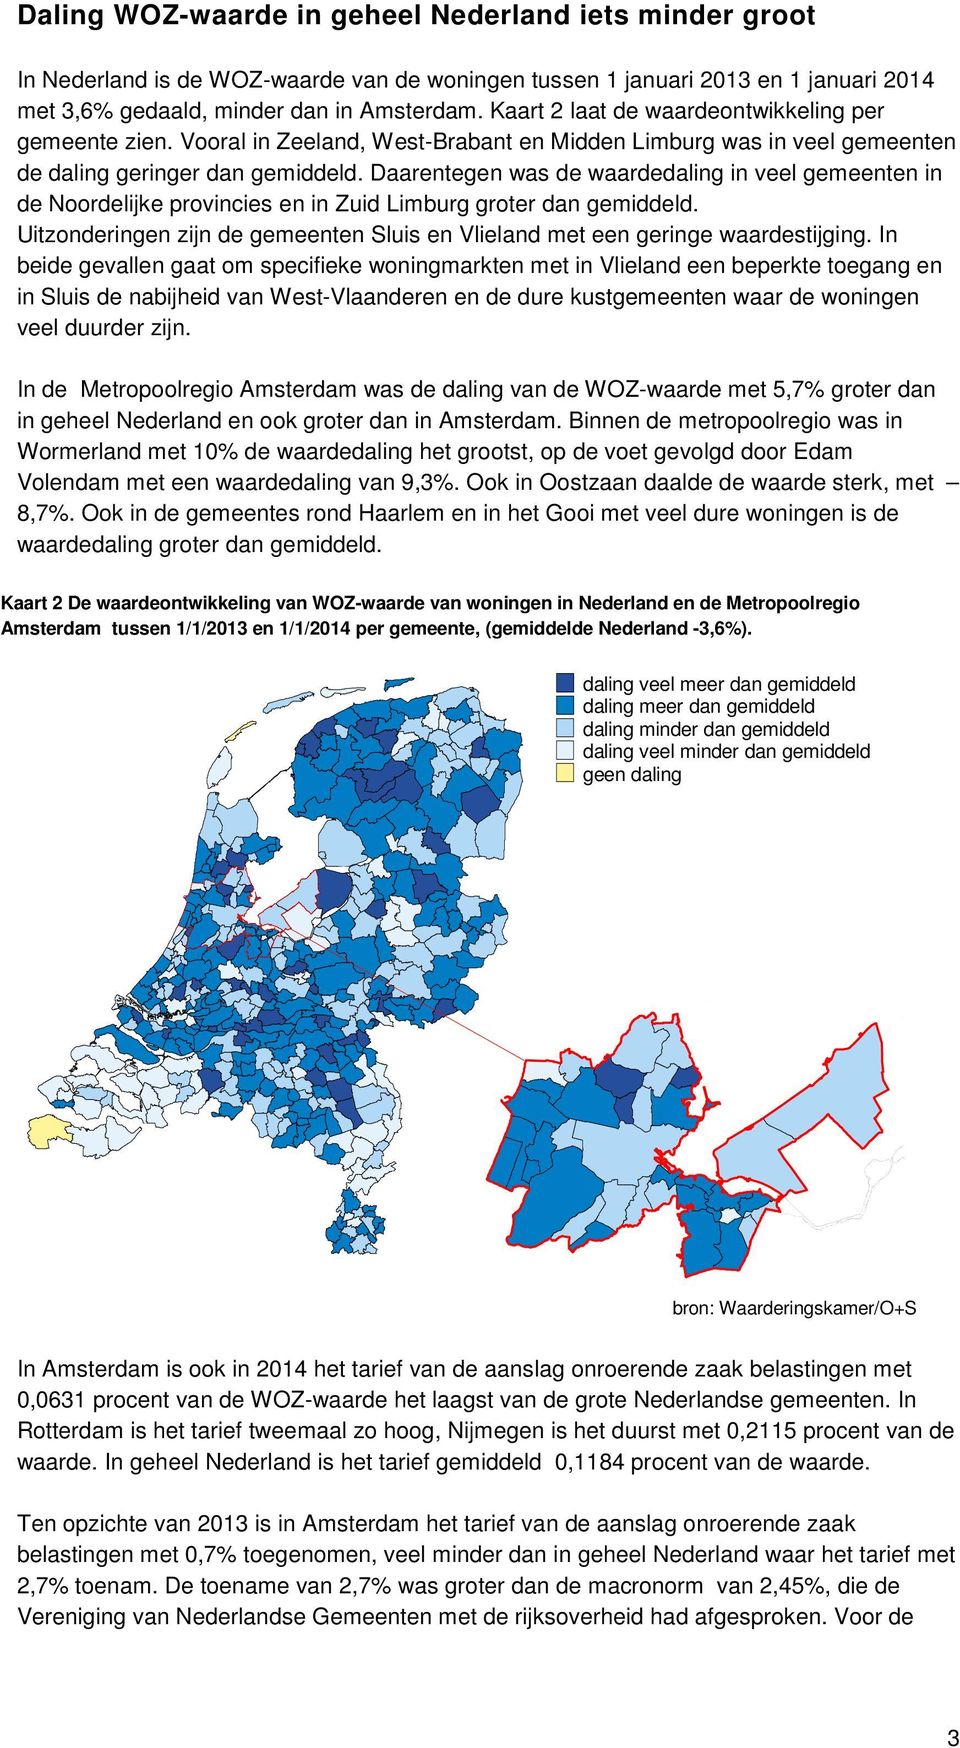 Daarentegen was de waardedaling in veel gemeenten in de Noordelijke provincies en in Zuid Limburg groter dan gemiddeld.